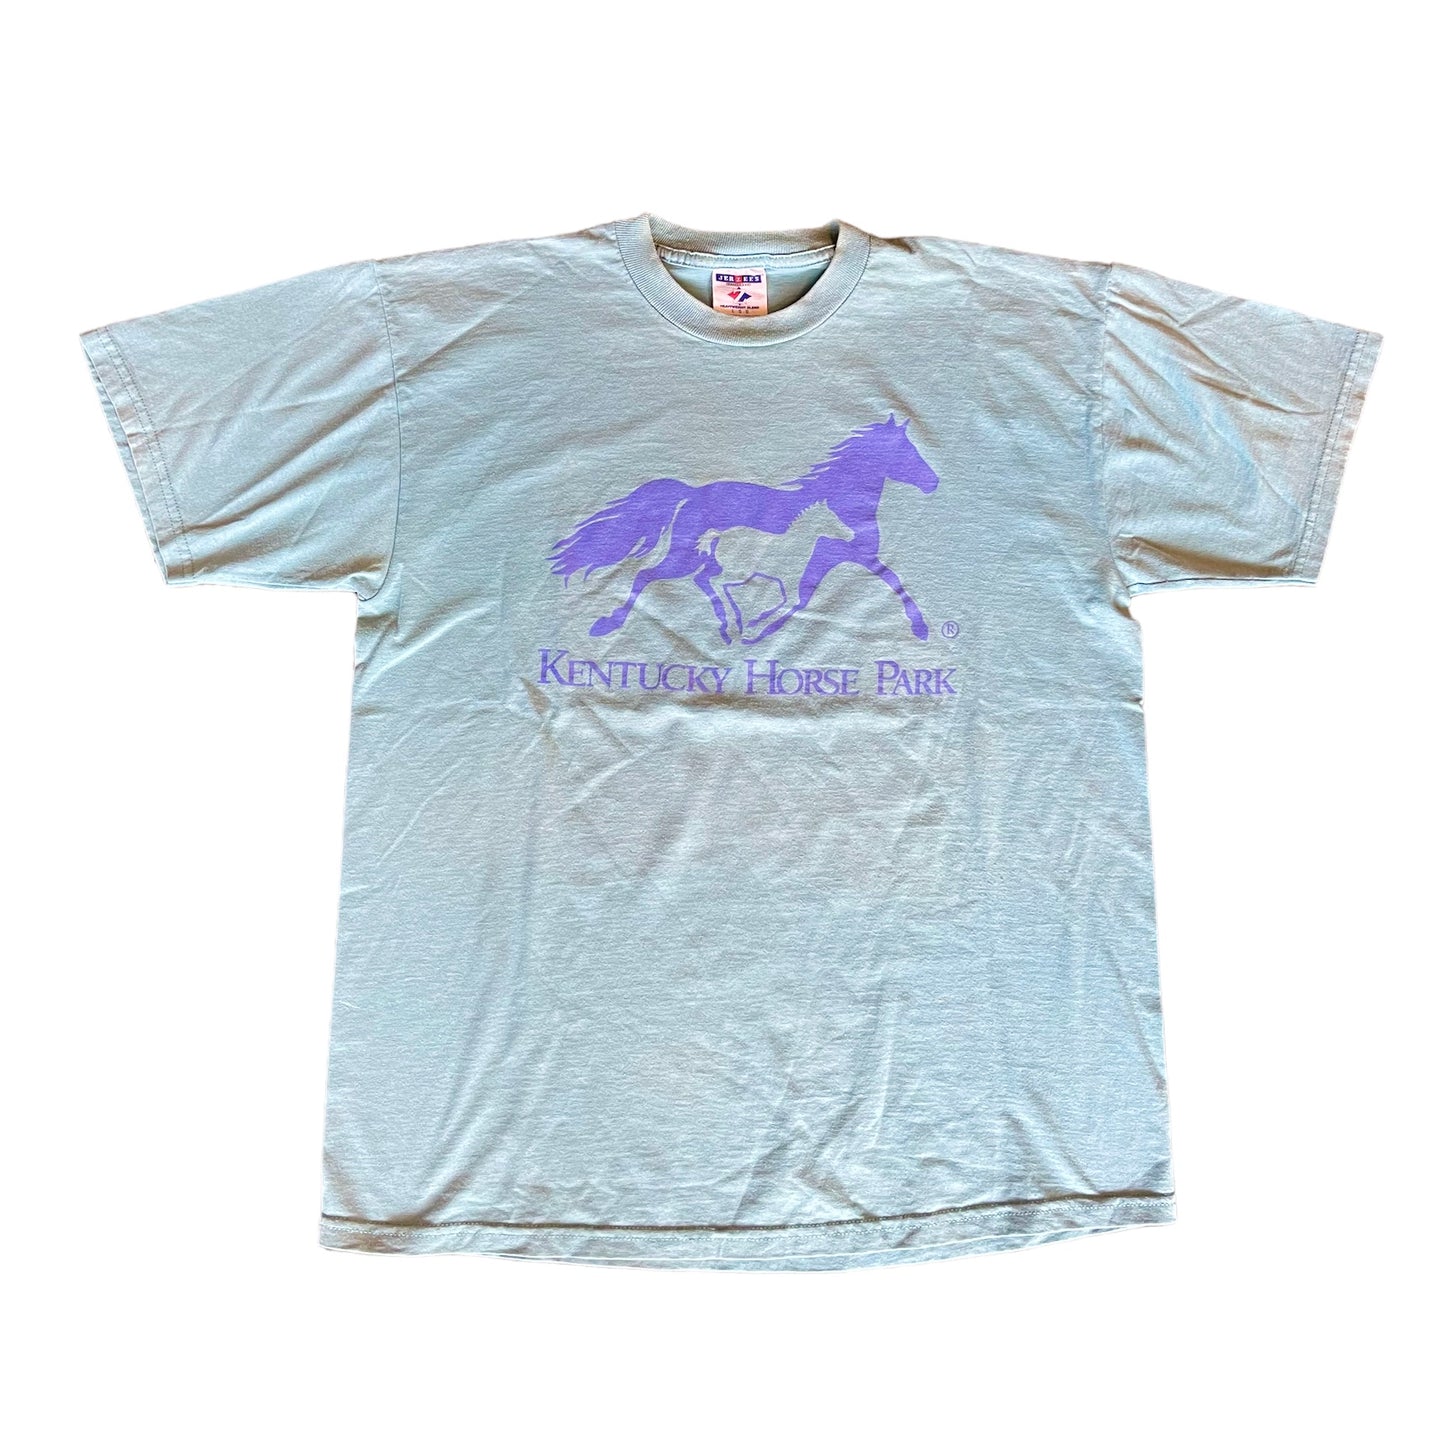 Kentucky Horse Park Shirt